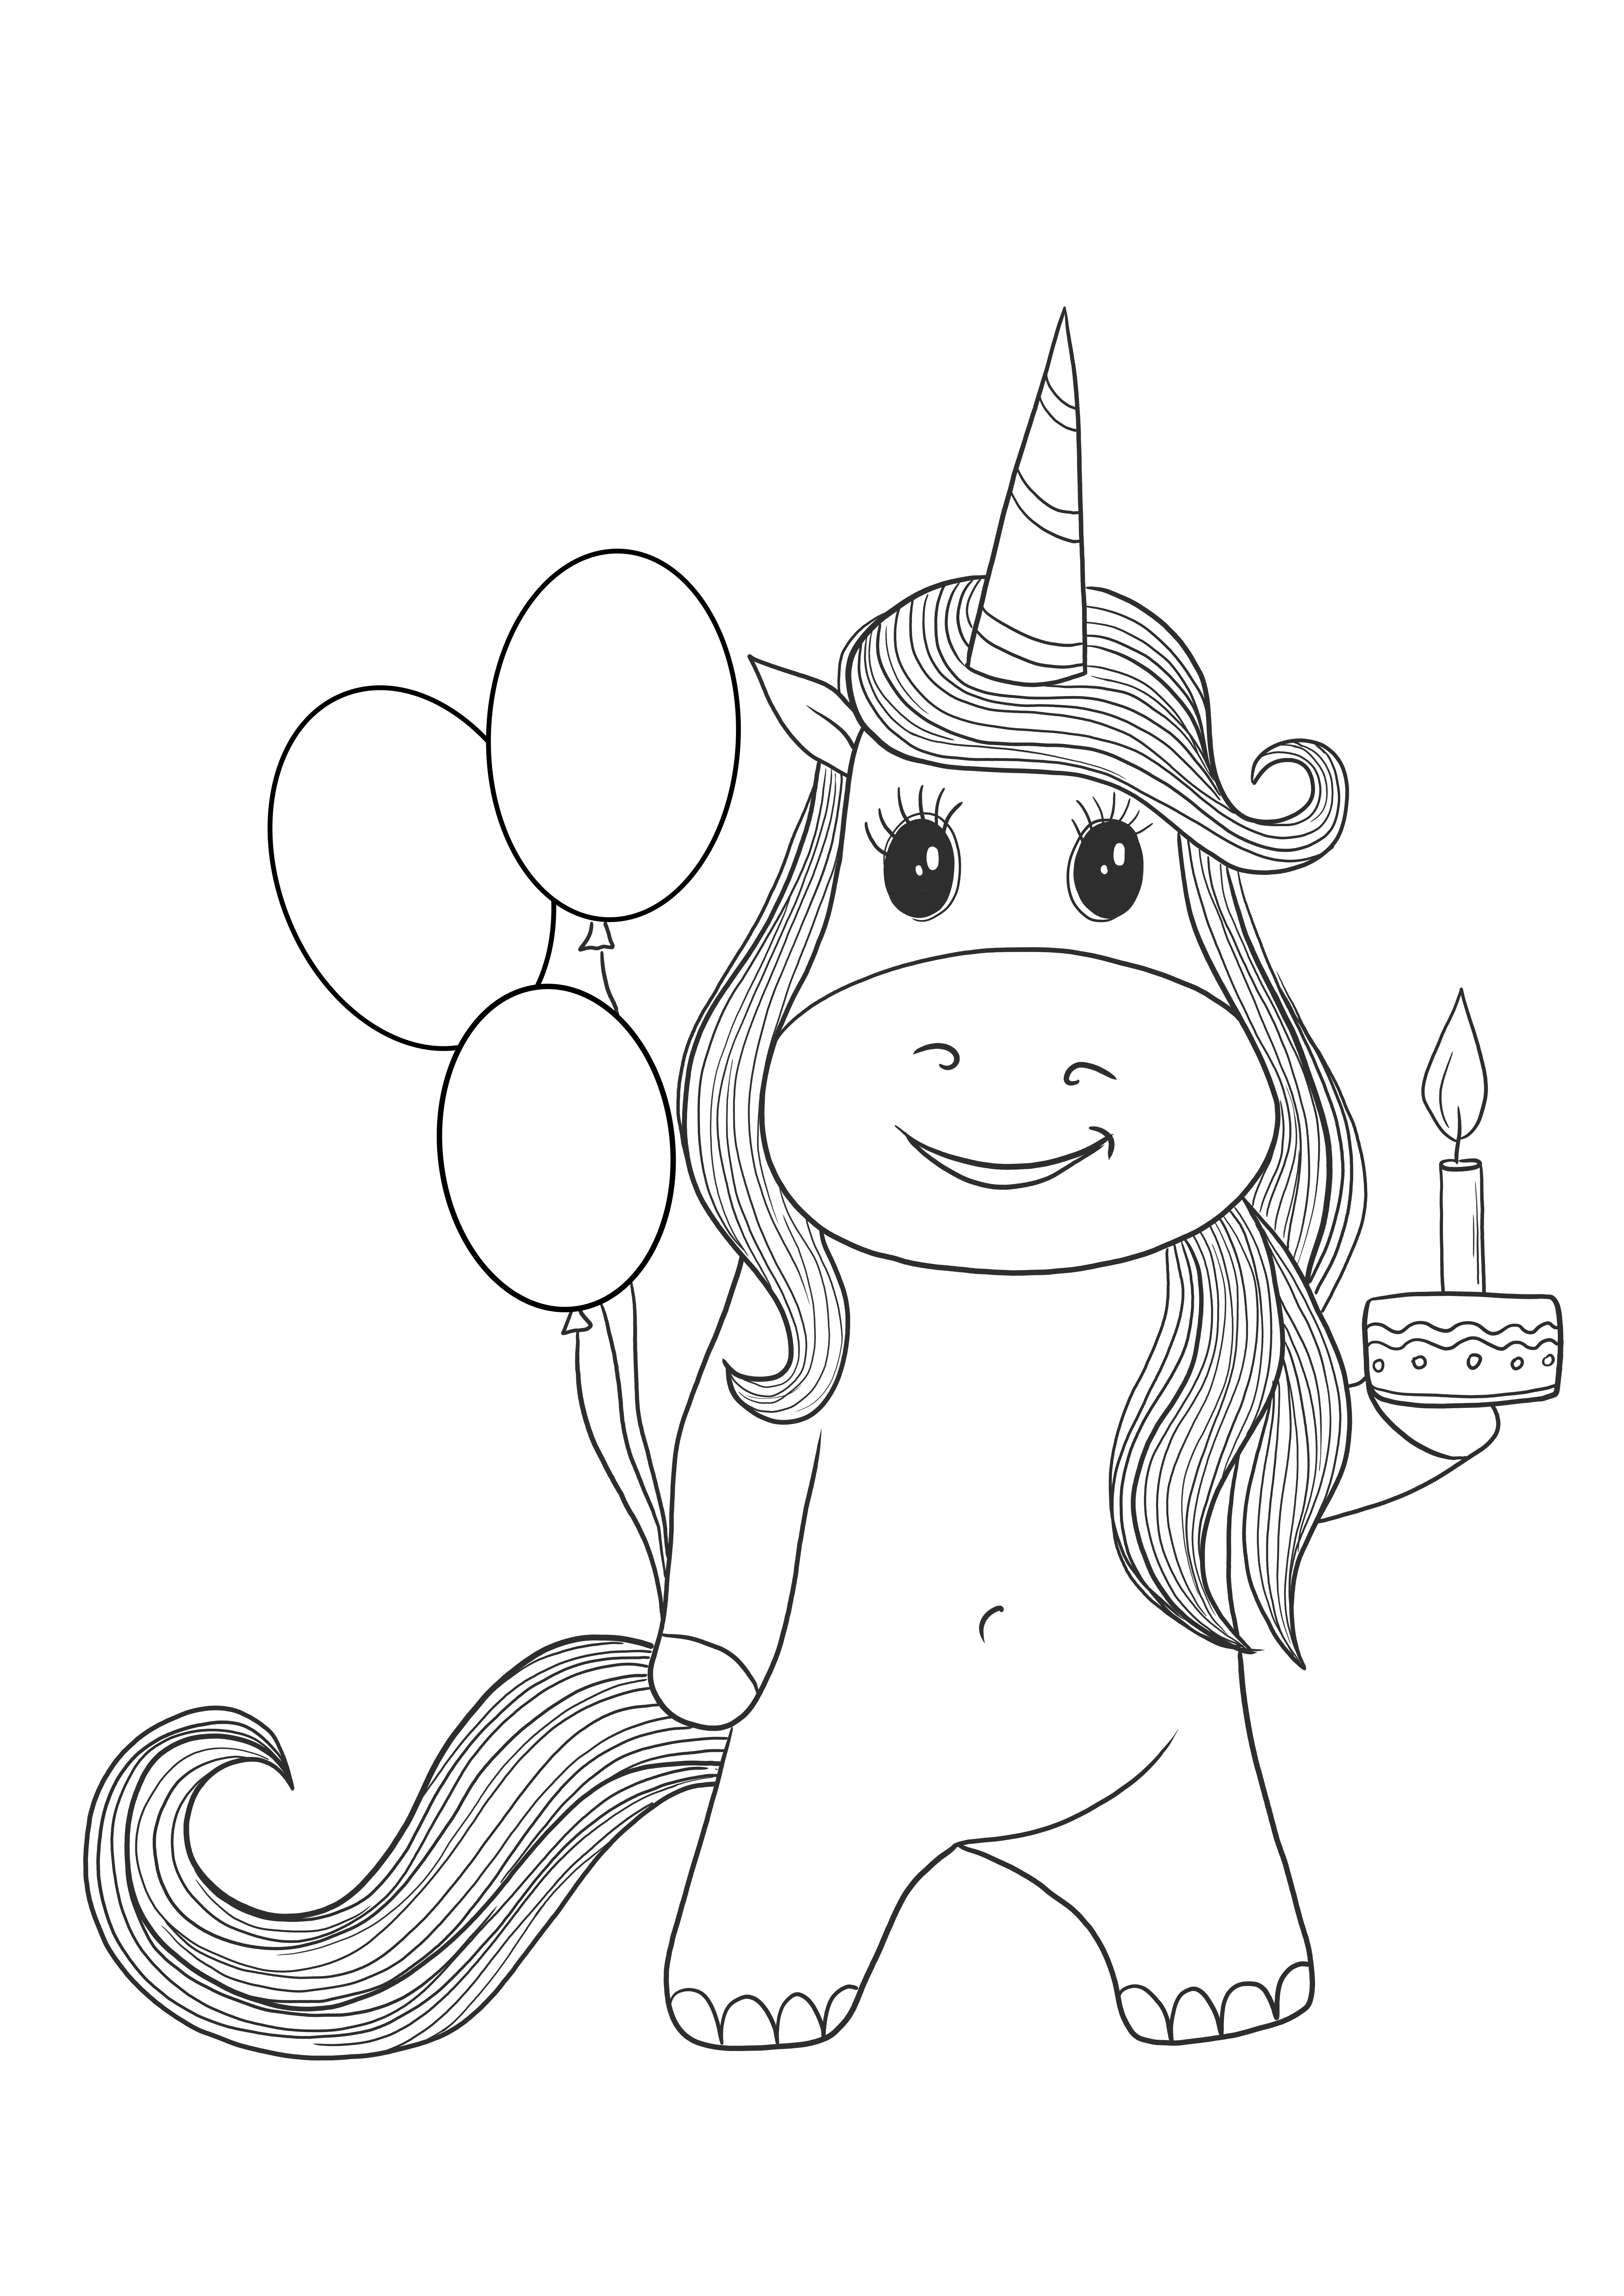 Kartu ulang tahun unicorn untuk diunduh dan diwarnai secara gratis